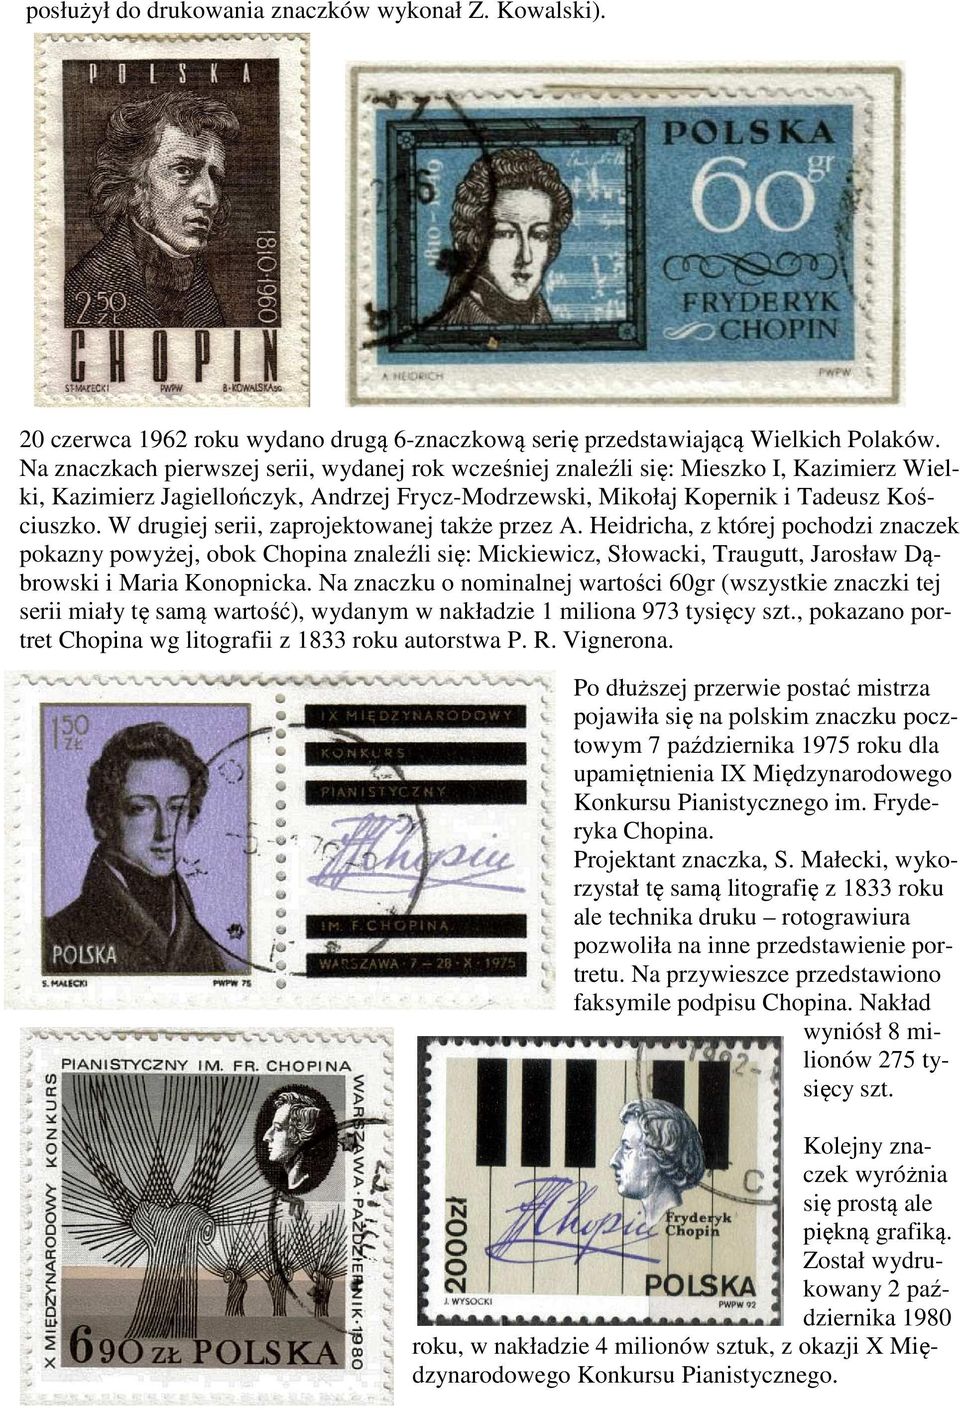 W drugiej serii, zaprojektowanej także przez A. Heidricha, z której pochodzi znaczek pokazny powyżej, obok Chopina znaleźli się: Mickiewicz, Słowacki, Traugutt, Jarosław Dąbrowski i Maria Konopnicka.